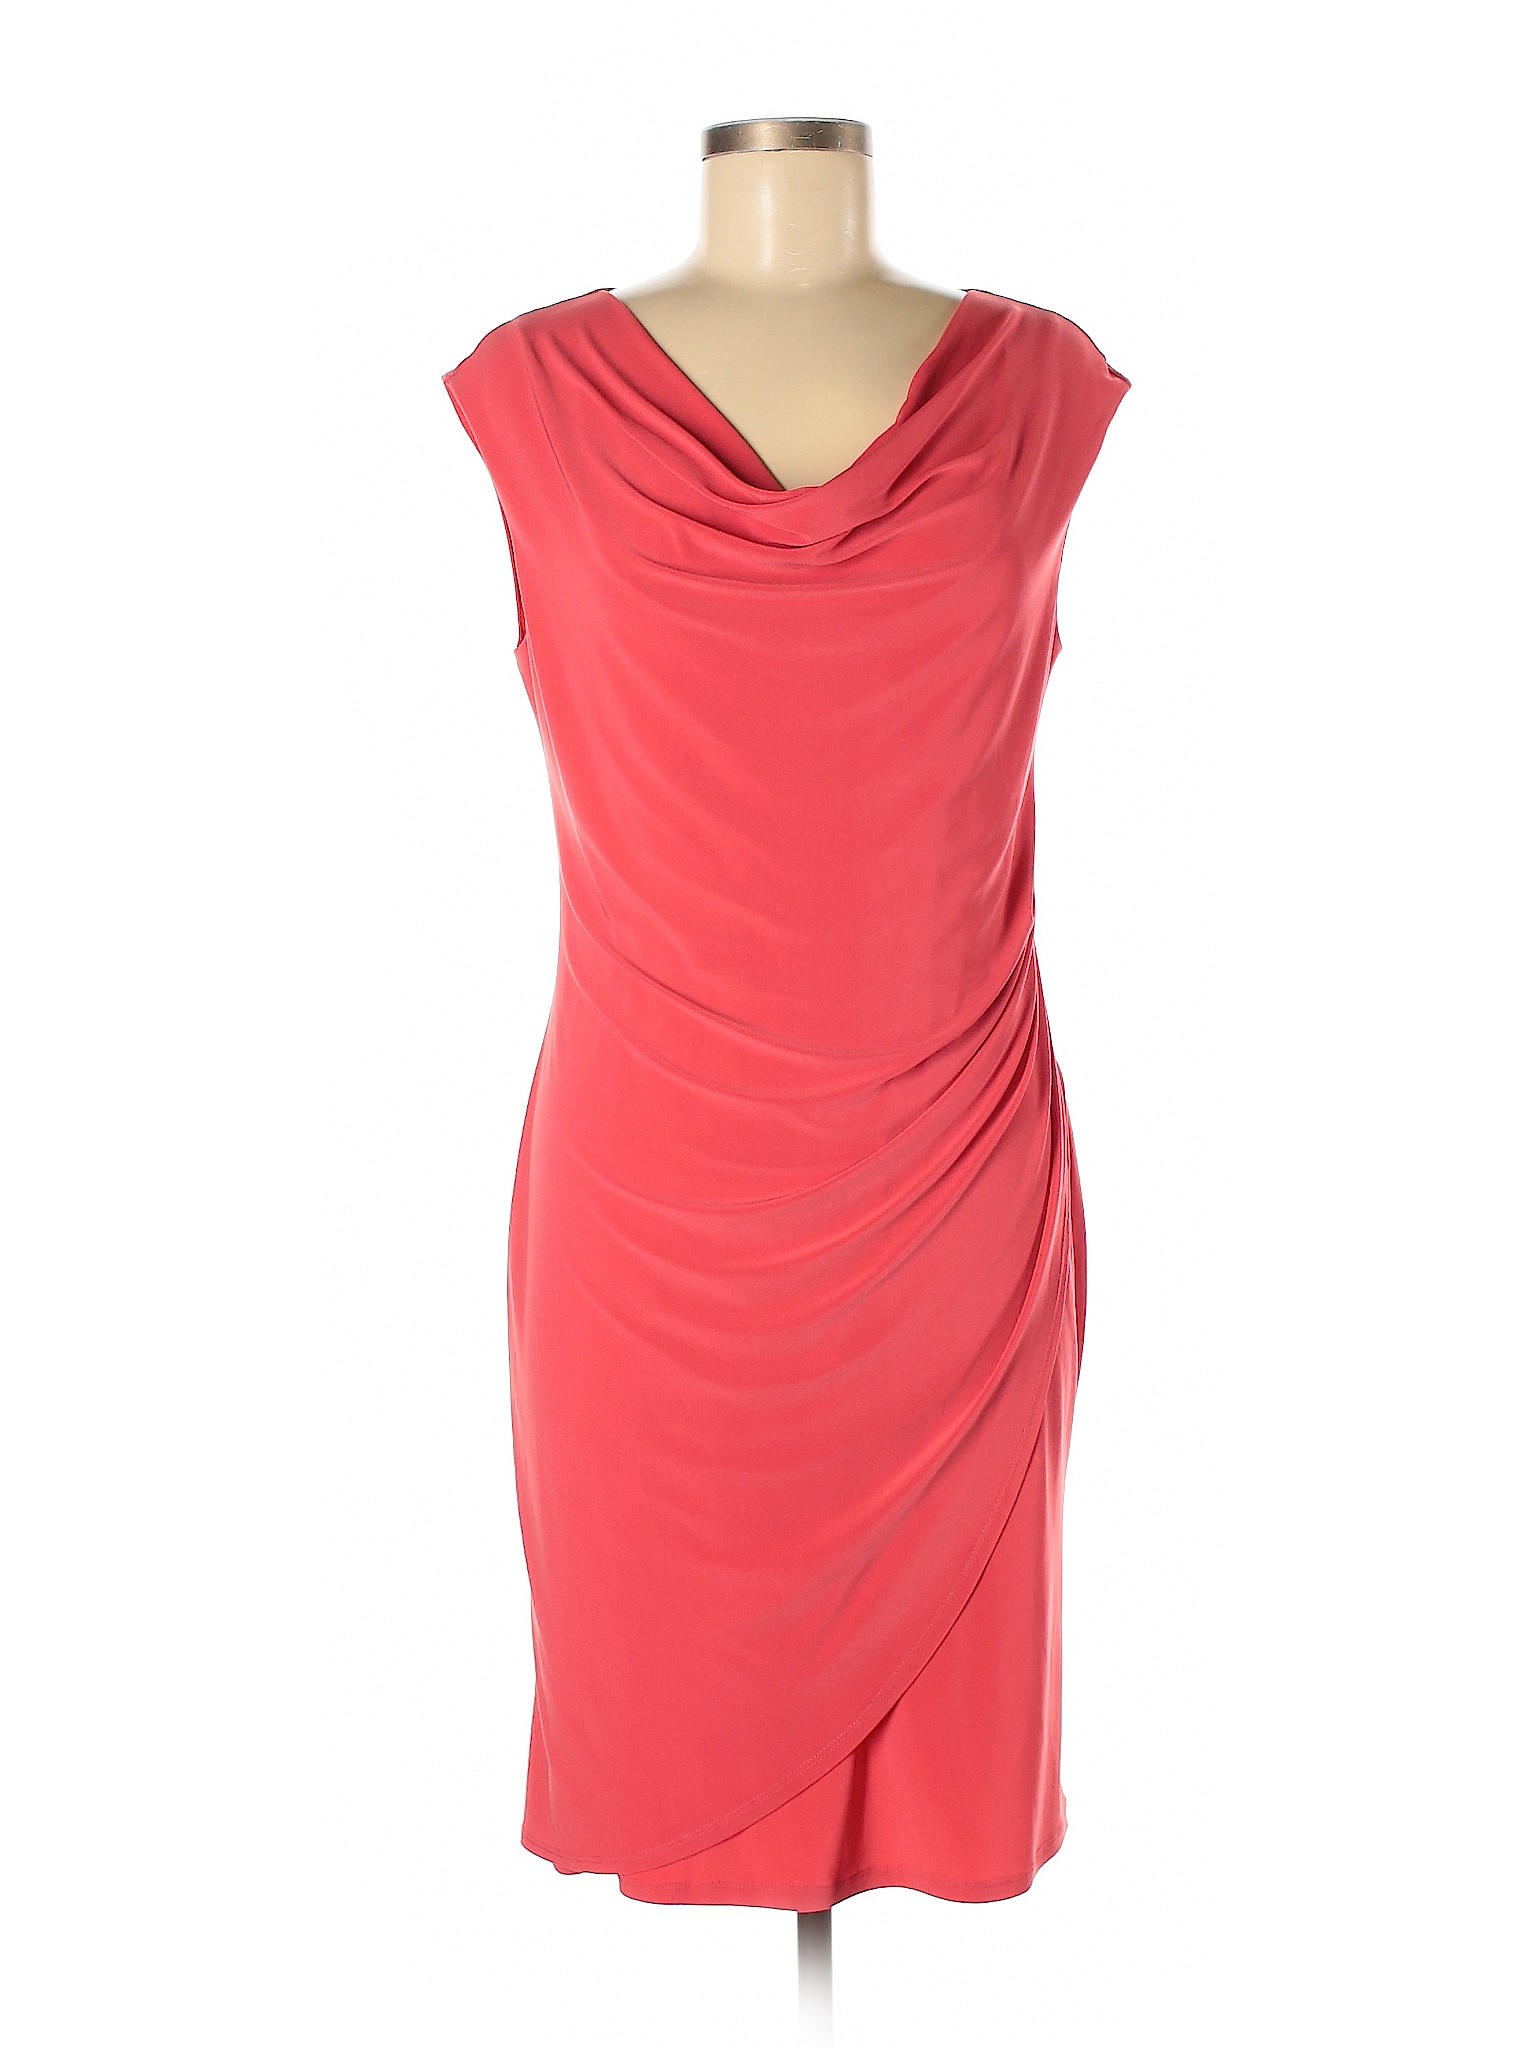 Clara Sun Woo Women Pink Casual Dress S | eBay